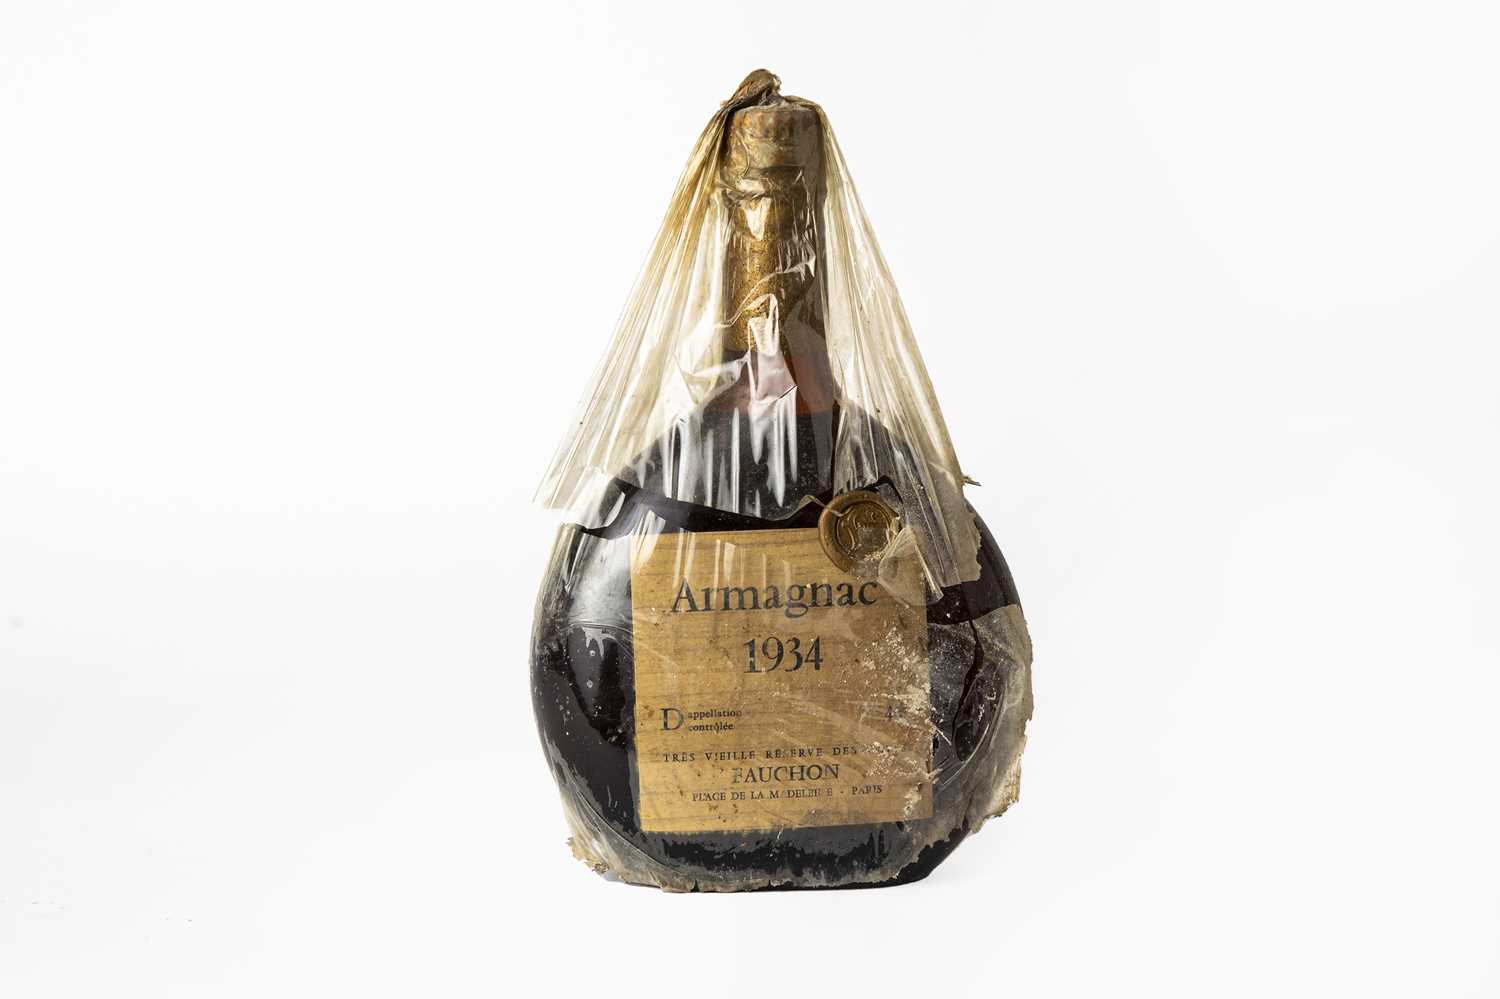 Lot 2105 - Fauchon 1934 Armagnac (one bottle)